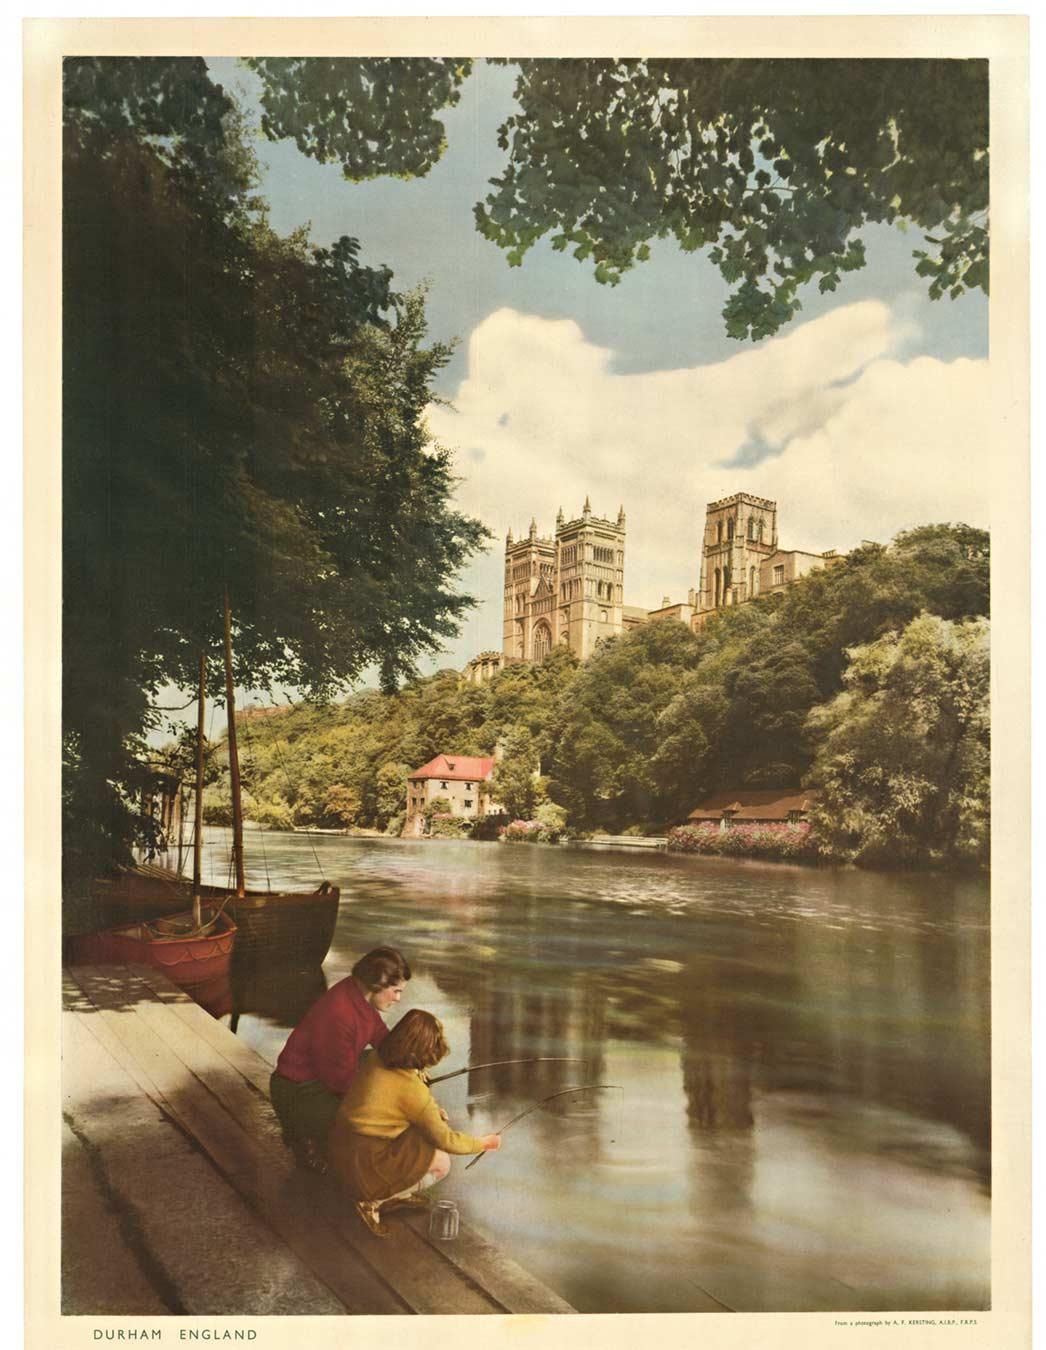 Original Durham England British Railways Vintage Travel Poster – Print von Anthony Frank Kersting